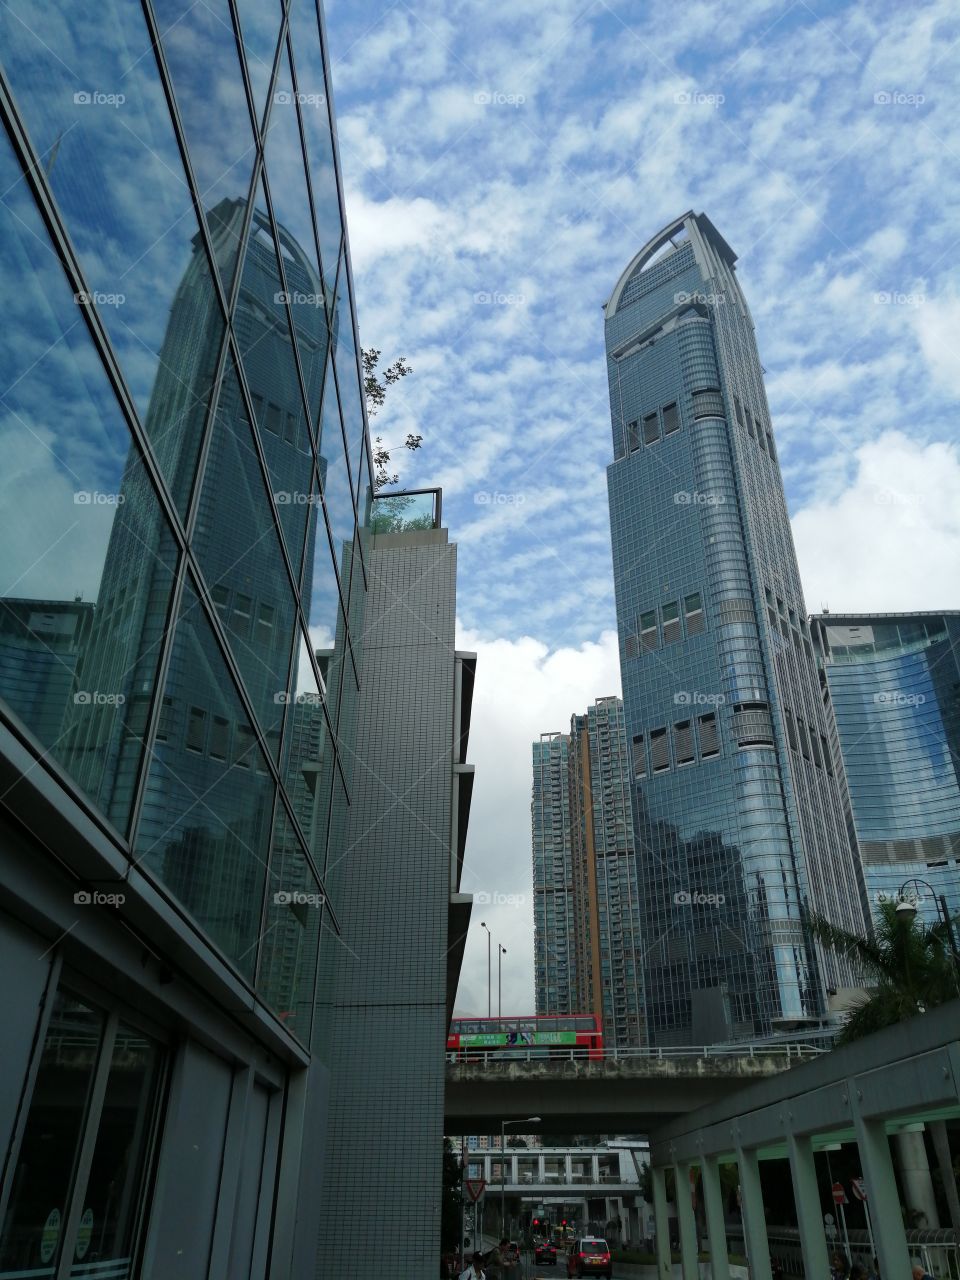 The Nina Tower and its reflection, Tsuen Wan, Hong Kong